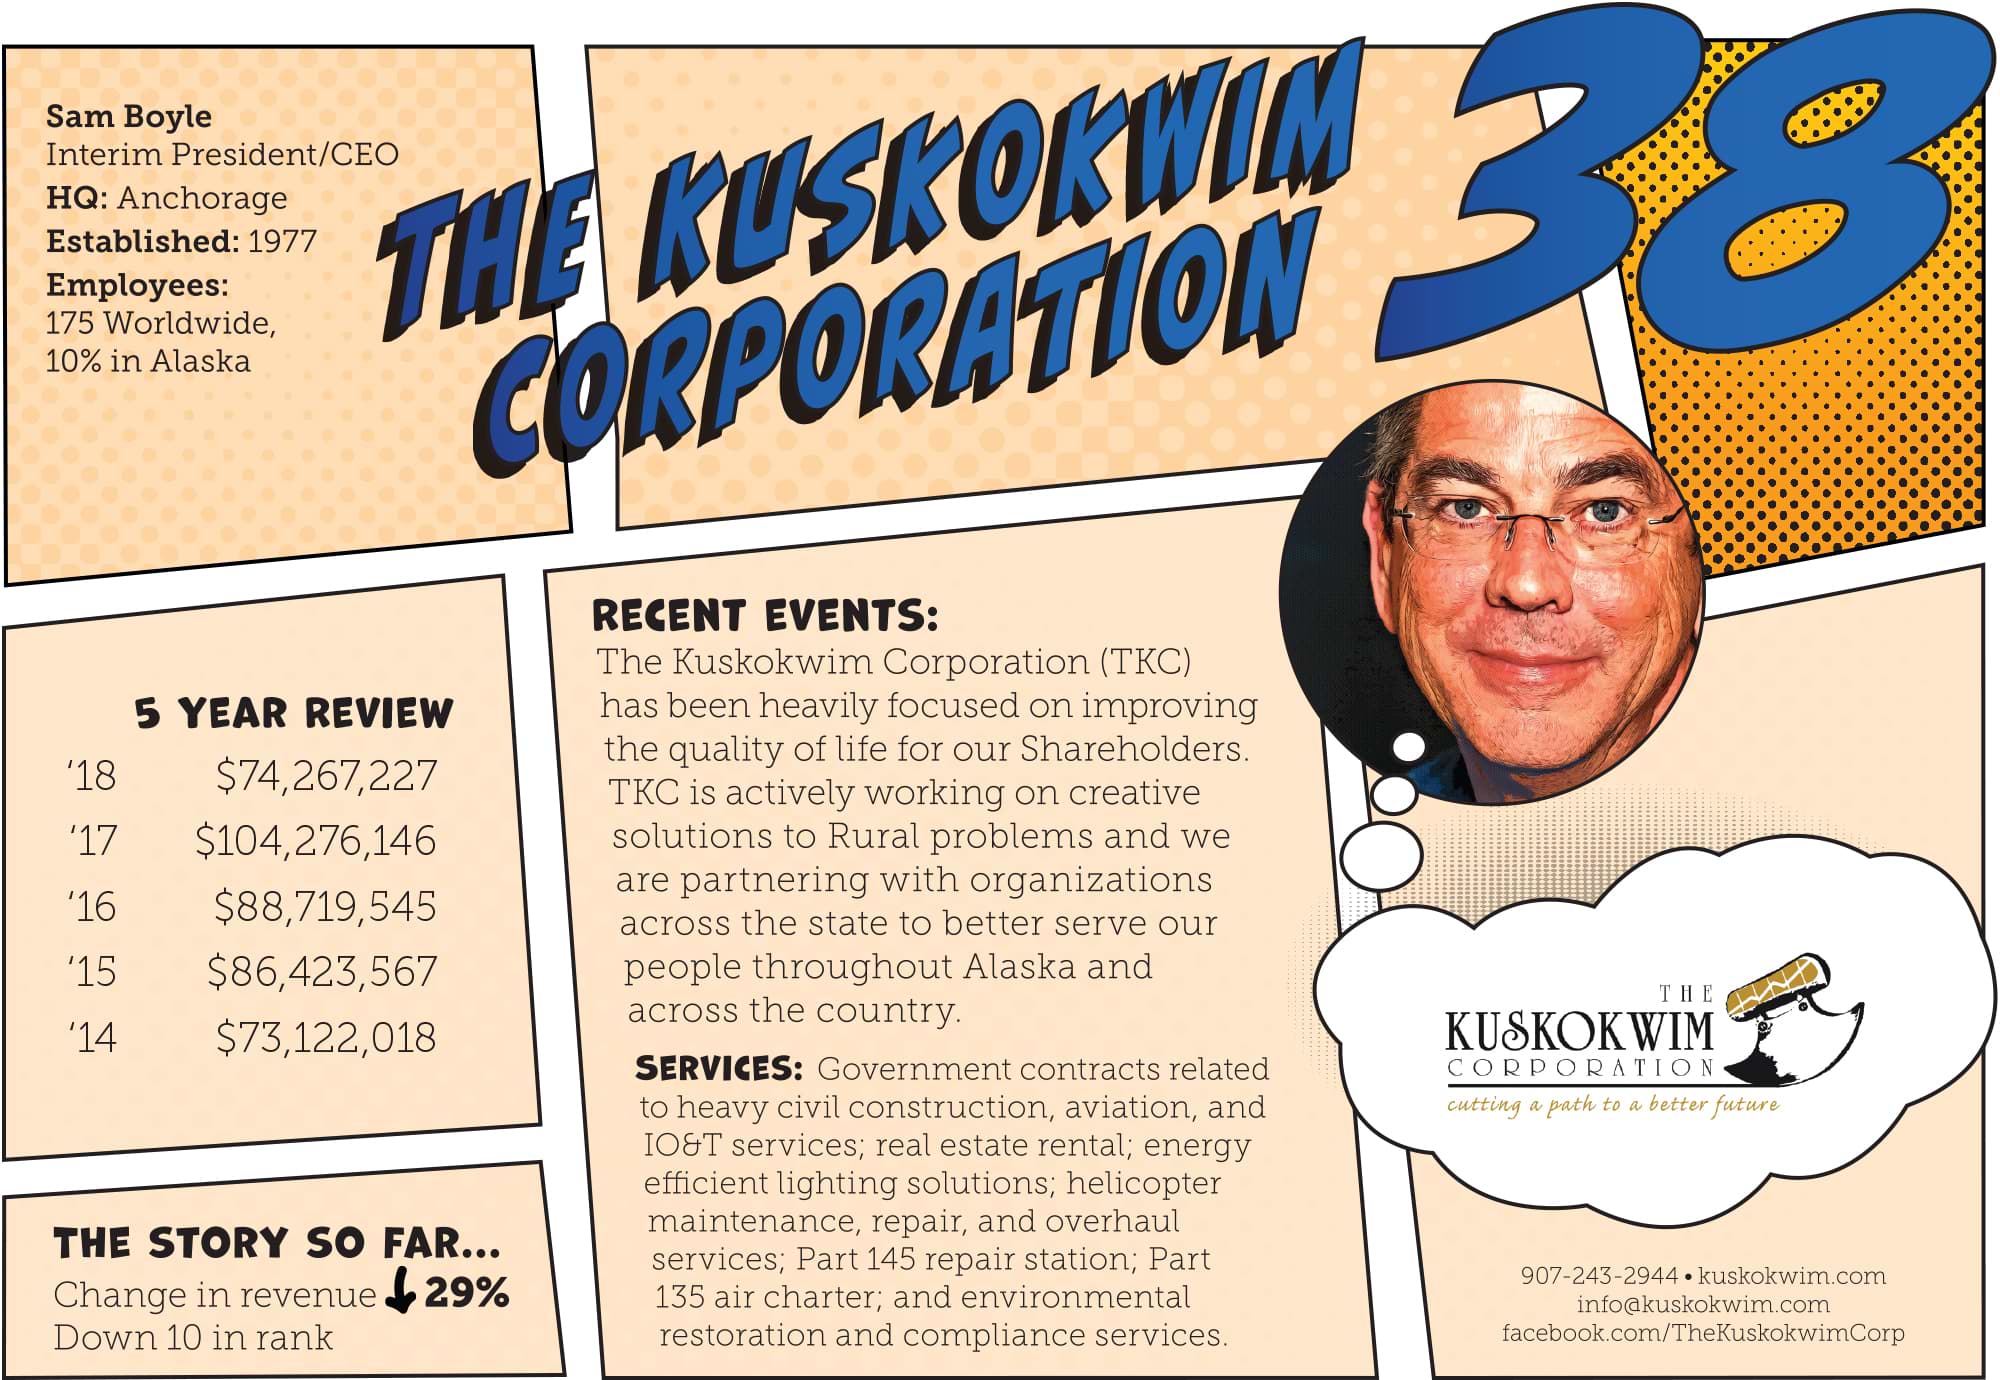 The Kuskokwim Corporation